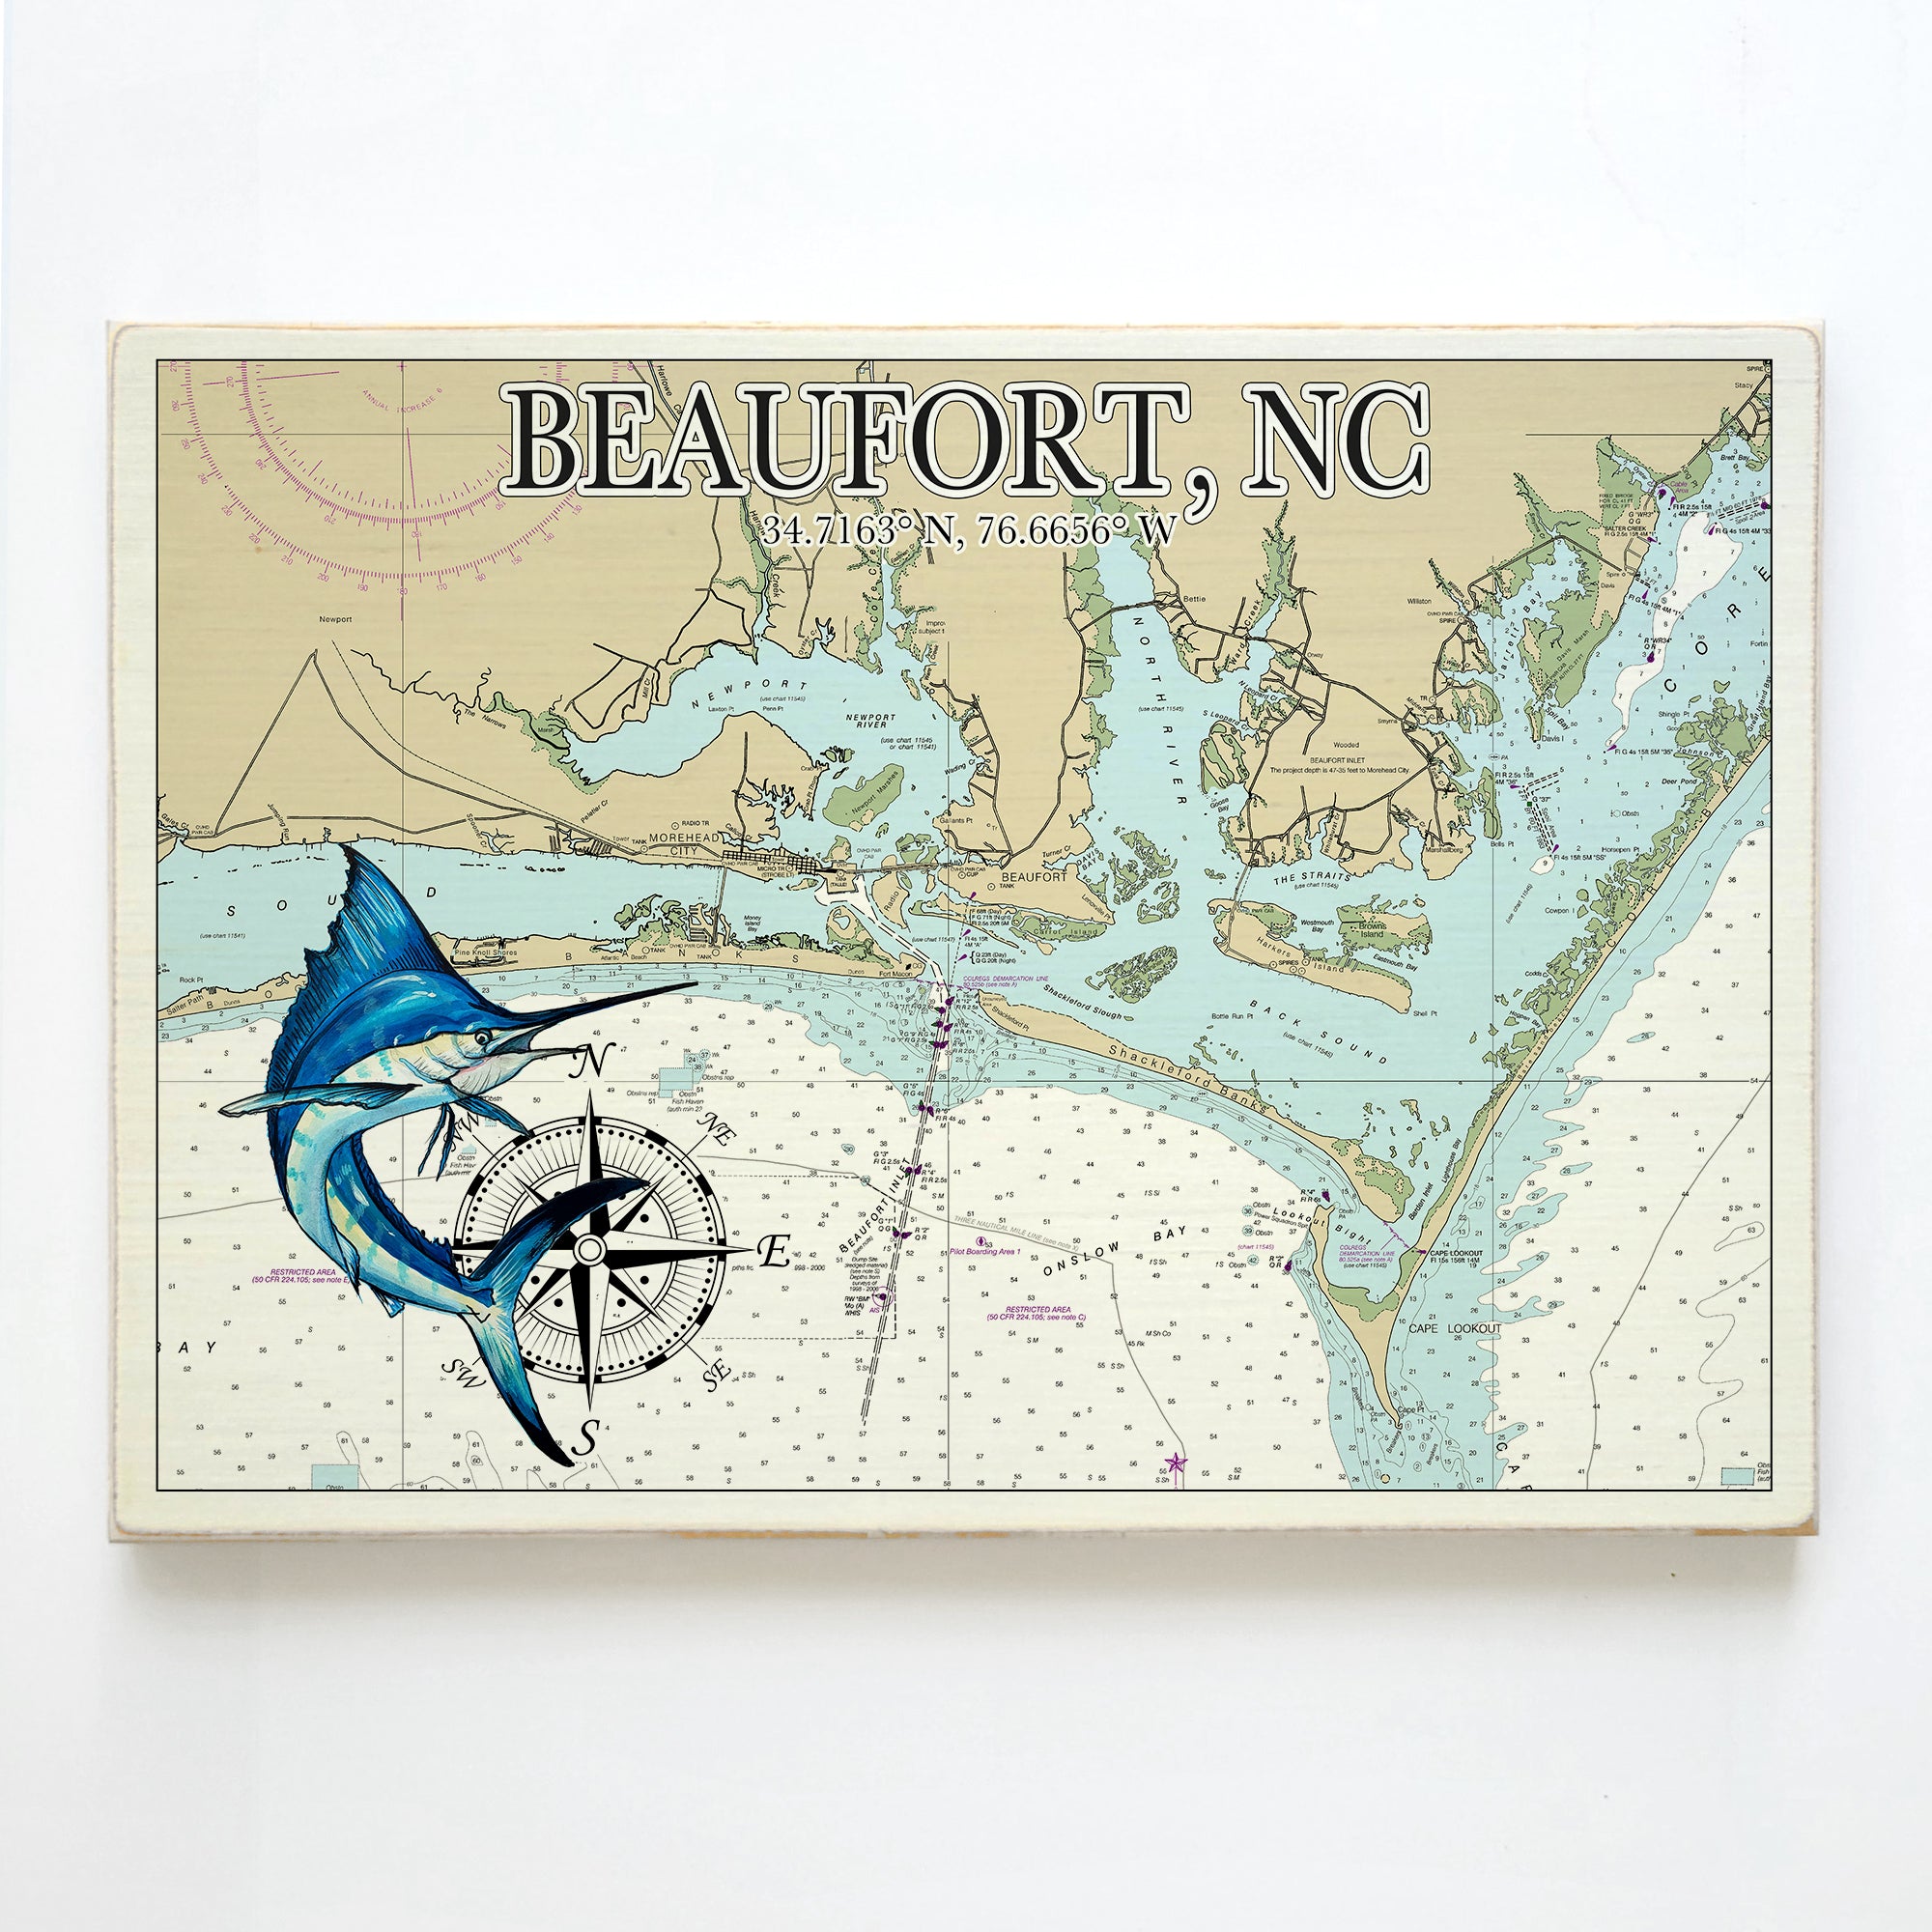 Beaufort, NC Marlin Plank Map